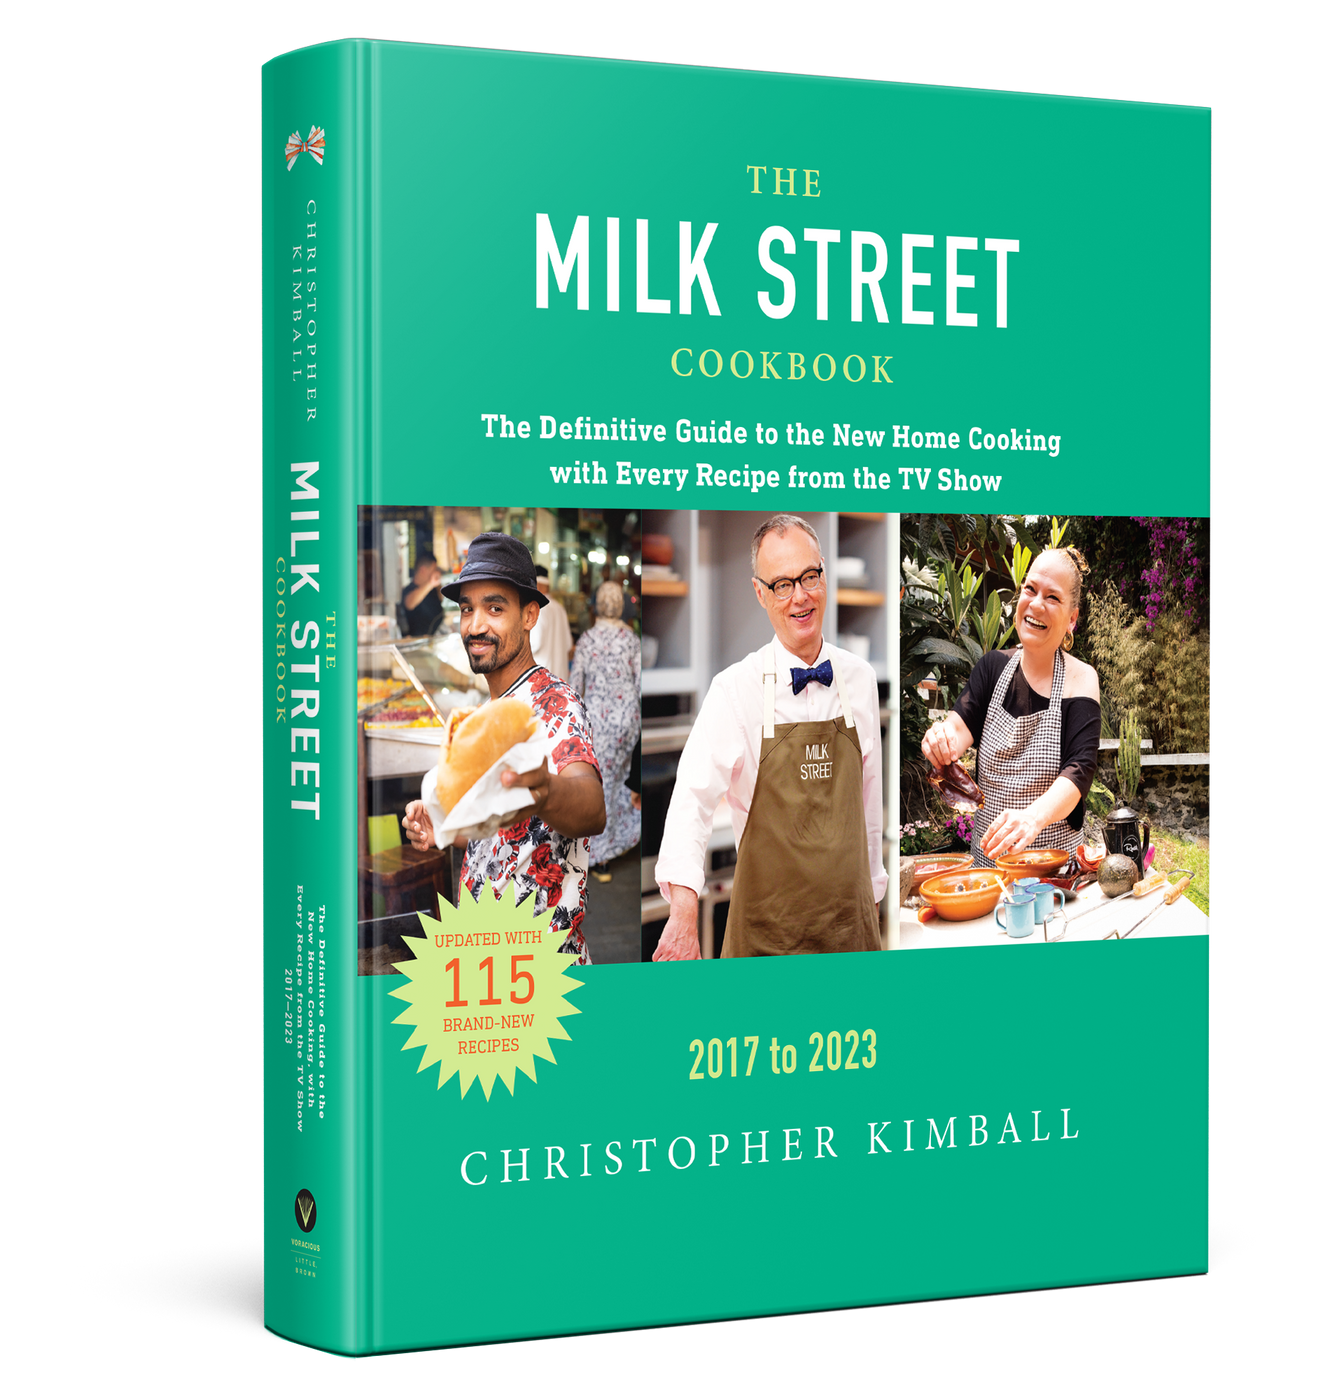 The Milk Street Season 6 Cookbook Cookbook Milk Street 